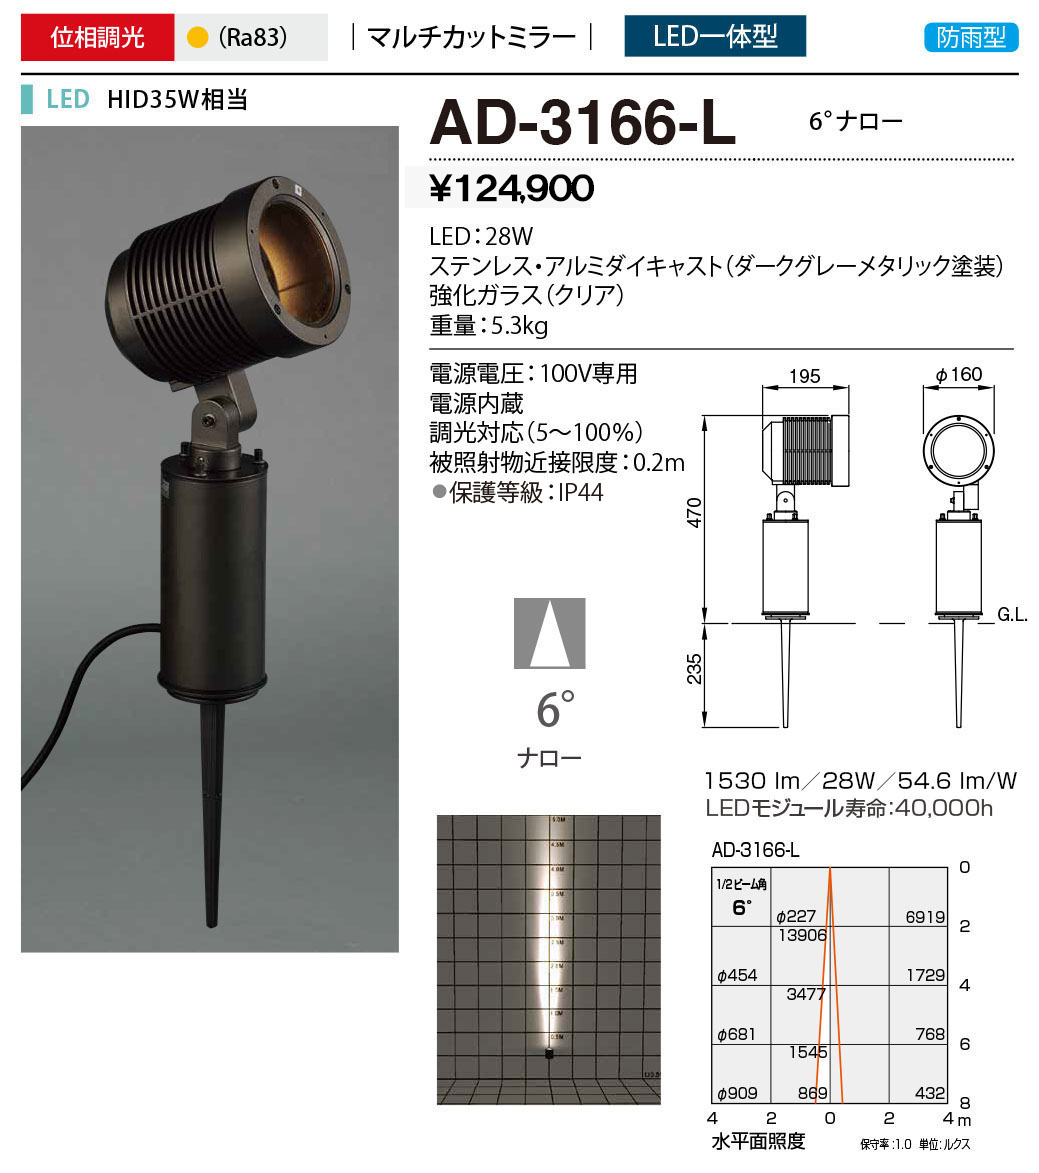 AD-3166-L